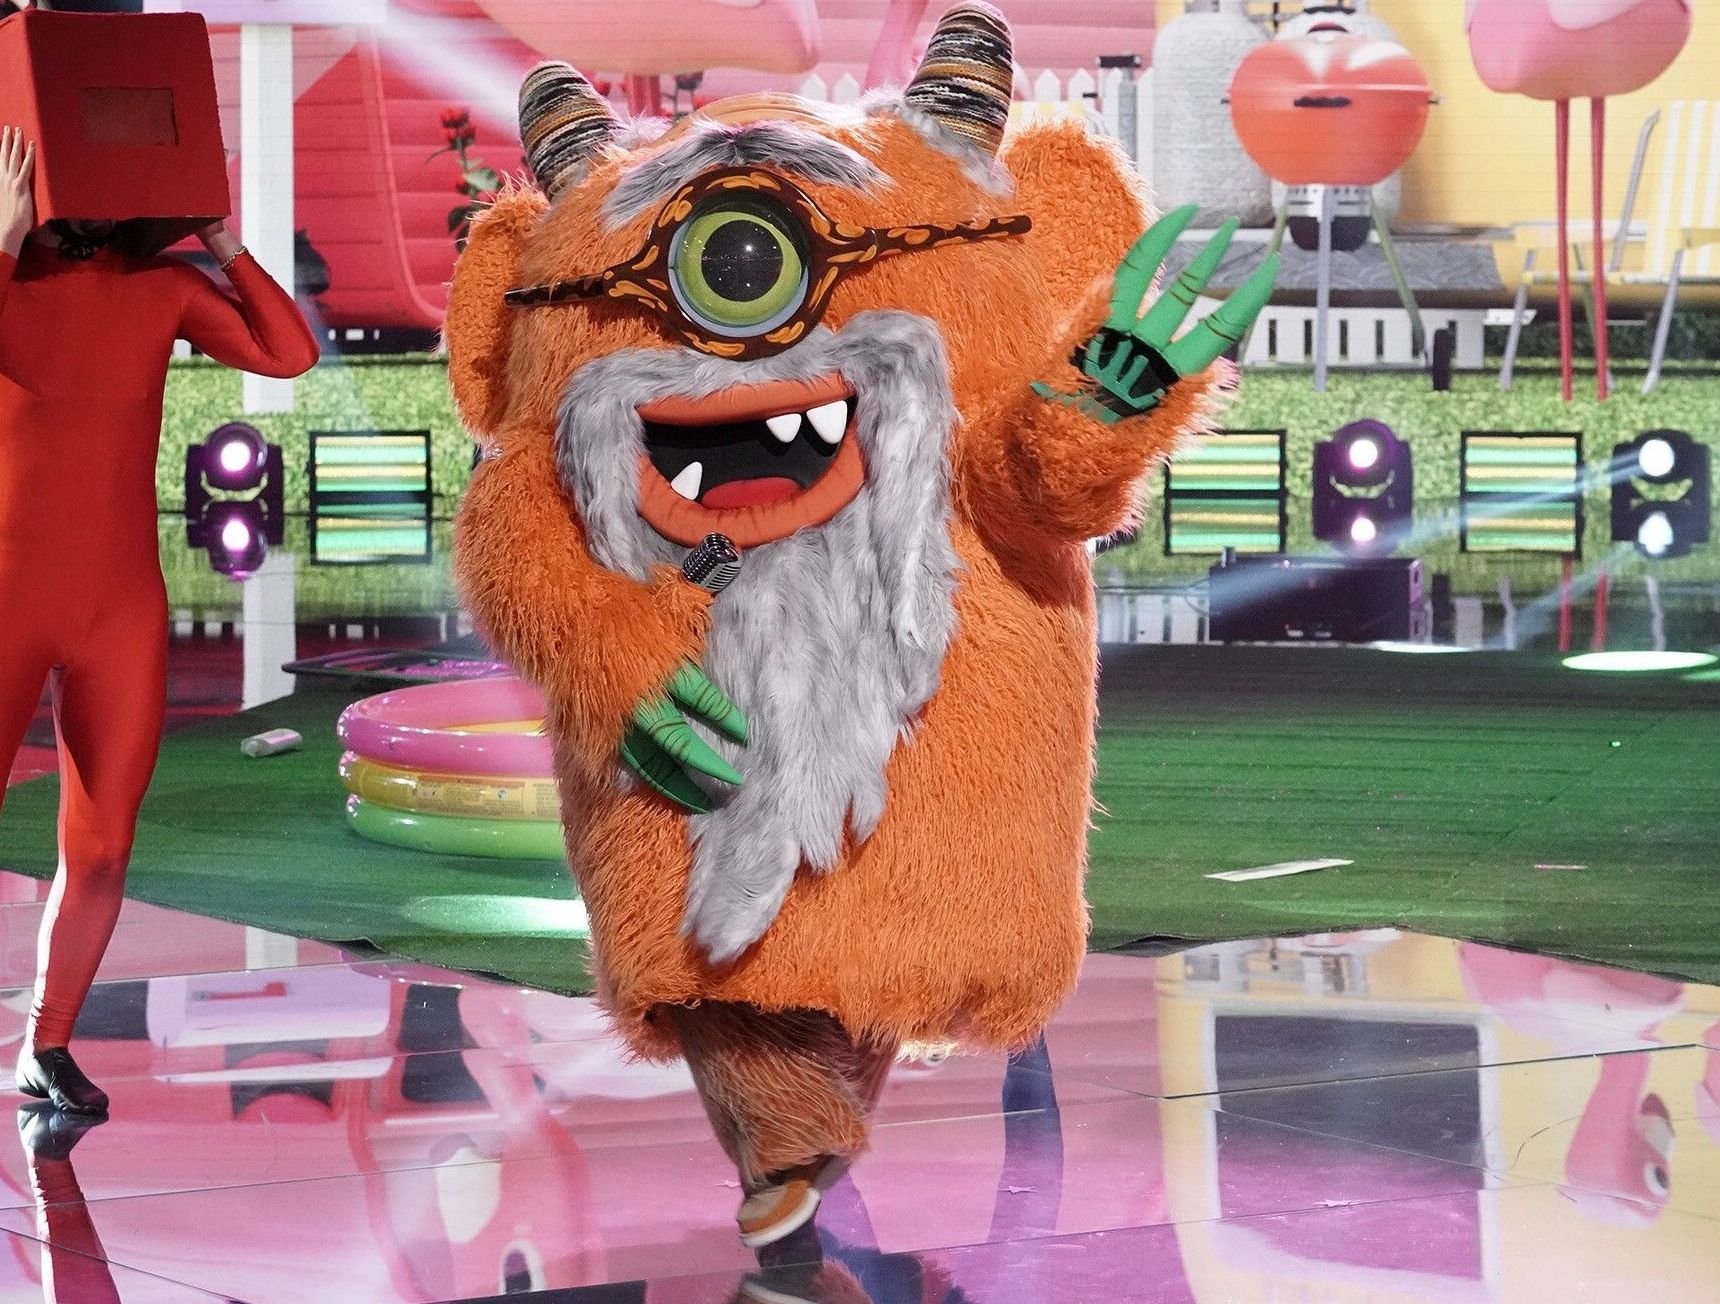 Wer sagt, dass Monster nicht altern? Das Opa-Monster ließ sich seinen Auftritt im Fernsehen nicht nehmen.